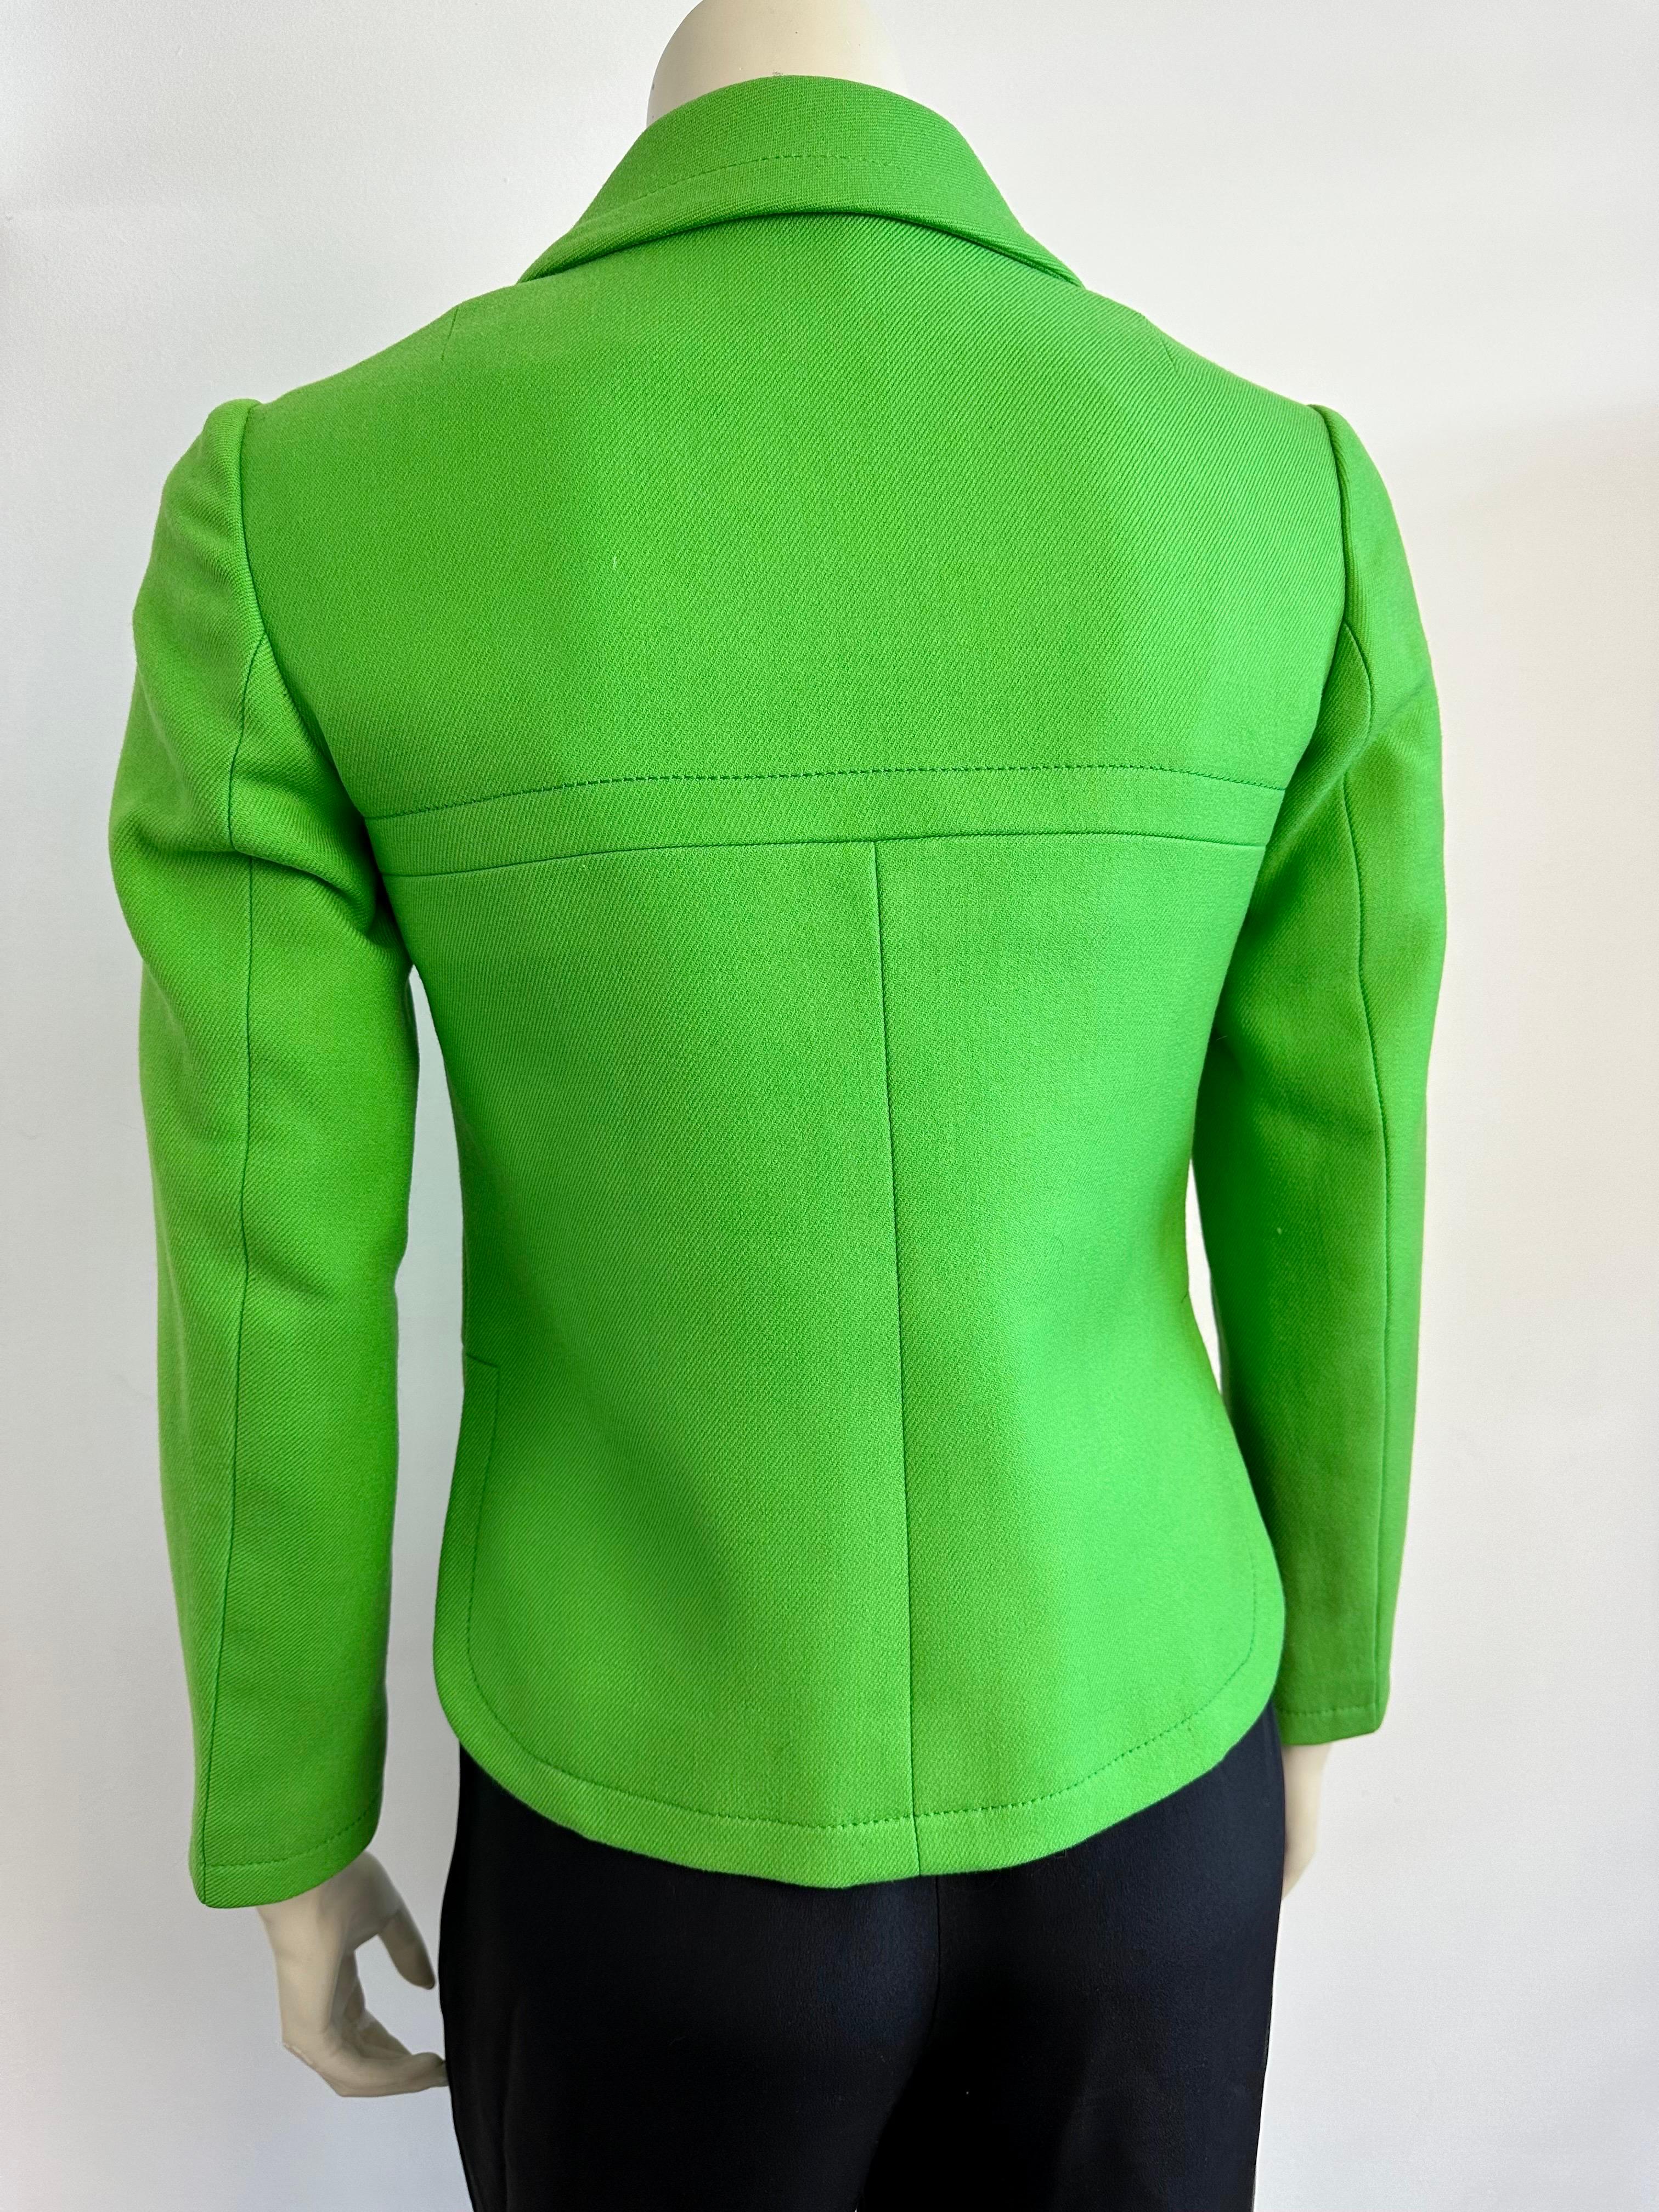 Pierre Cardin Promotion 1970s green wool jacket For Sale 3